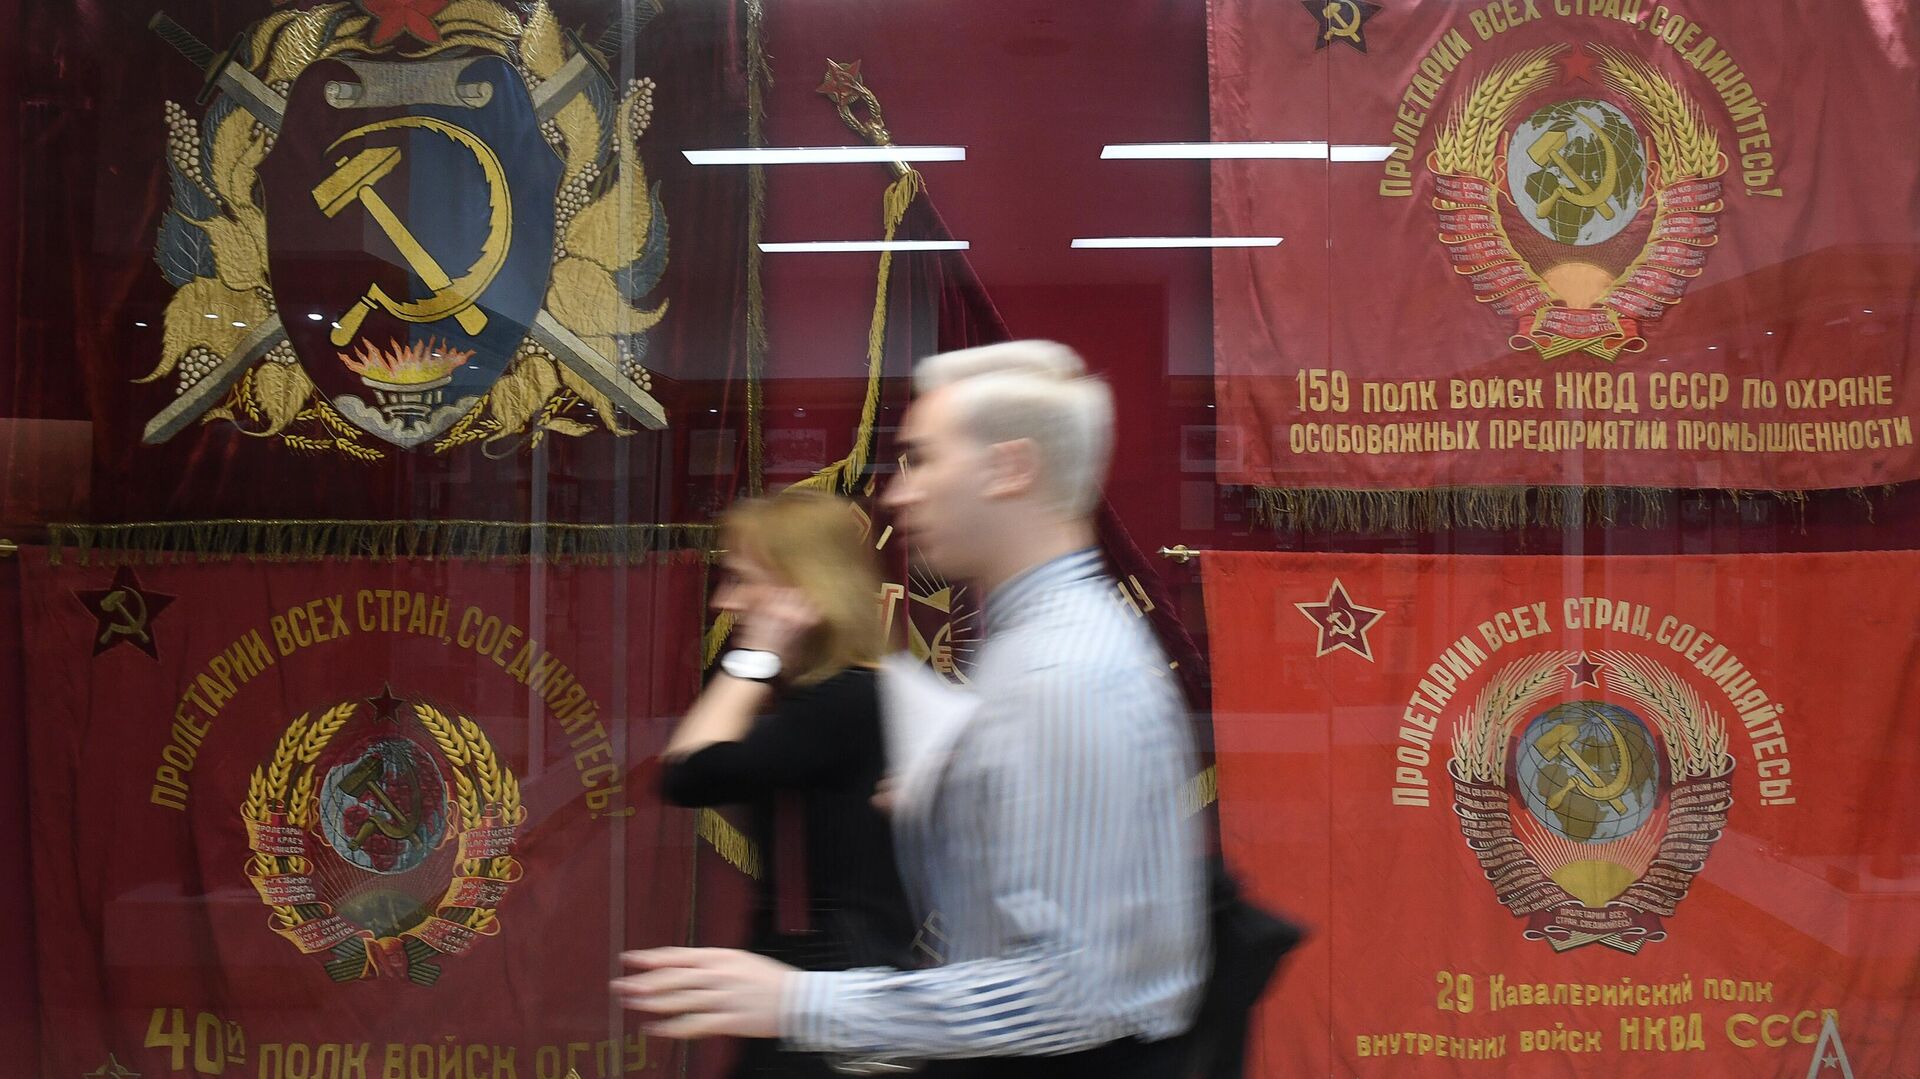 Посетители идут вдоль стенда с боевыми знаменами СССР в музее Росгвардии в Москве. - Sputnik Аҧсны, 1920, 08.12.2021